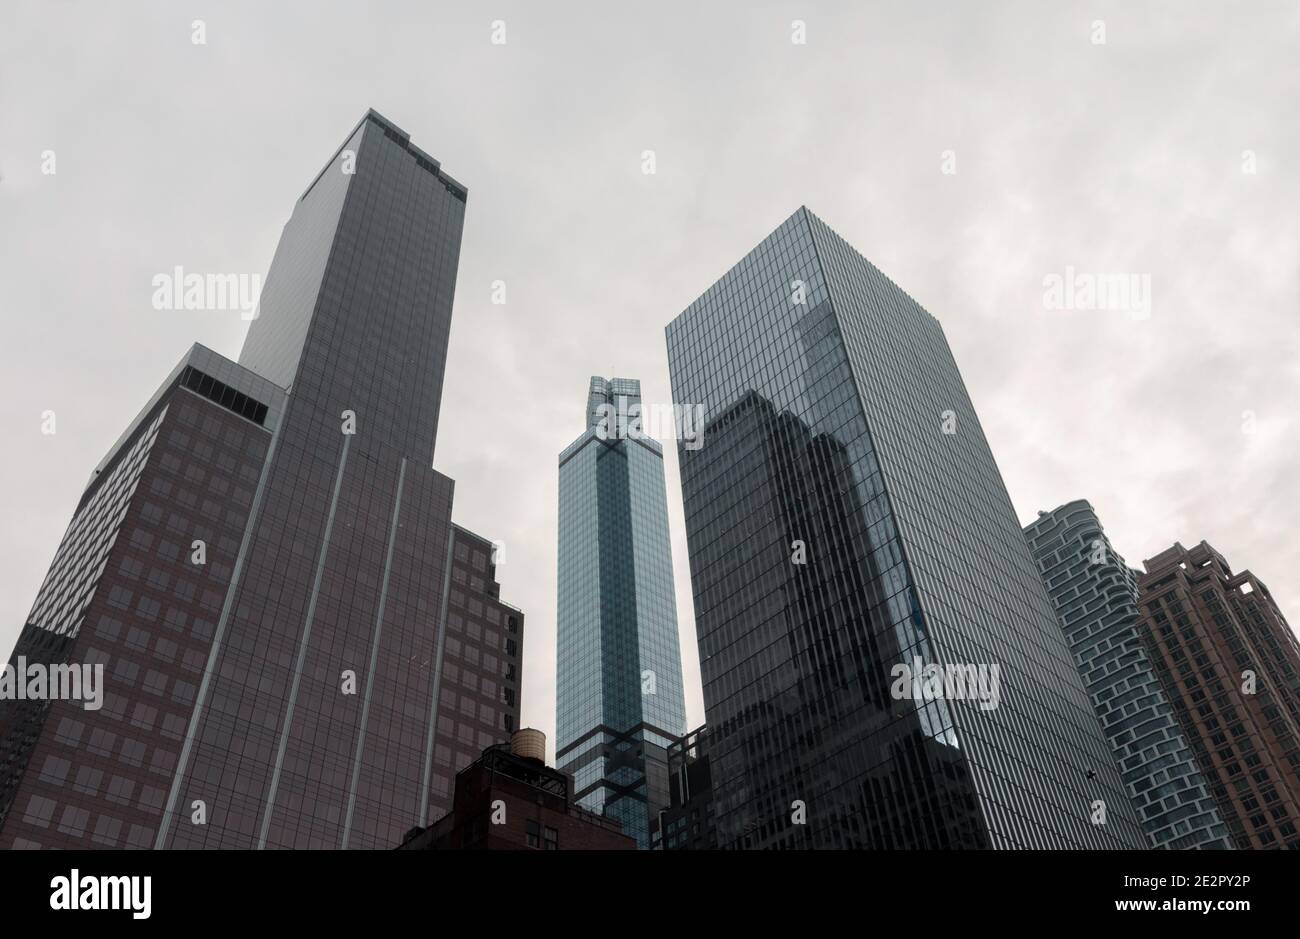 Die Wolkenkratzer der Stadt New york lehnen sich in einem weißen, wolkigen Himmel in den Fluchtpunkt, um eine dreieckige, geometrische Architekturszene auf der Skyline zu schaffen Stockfoto